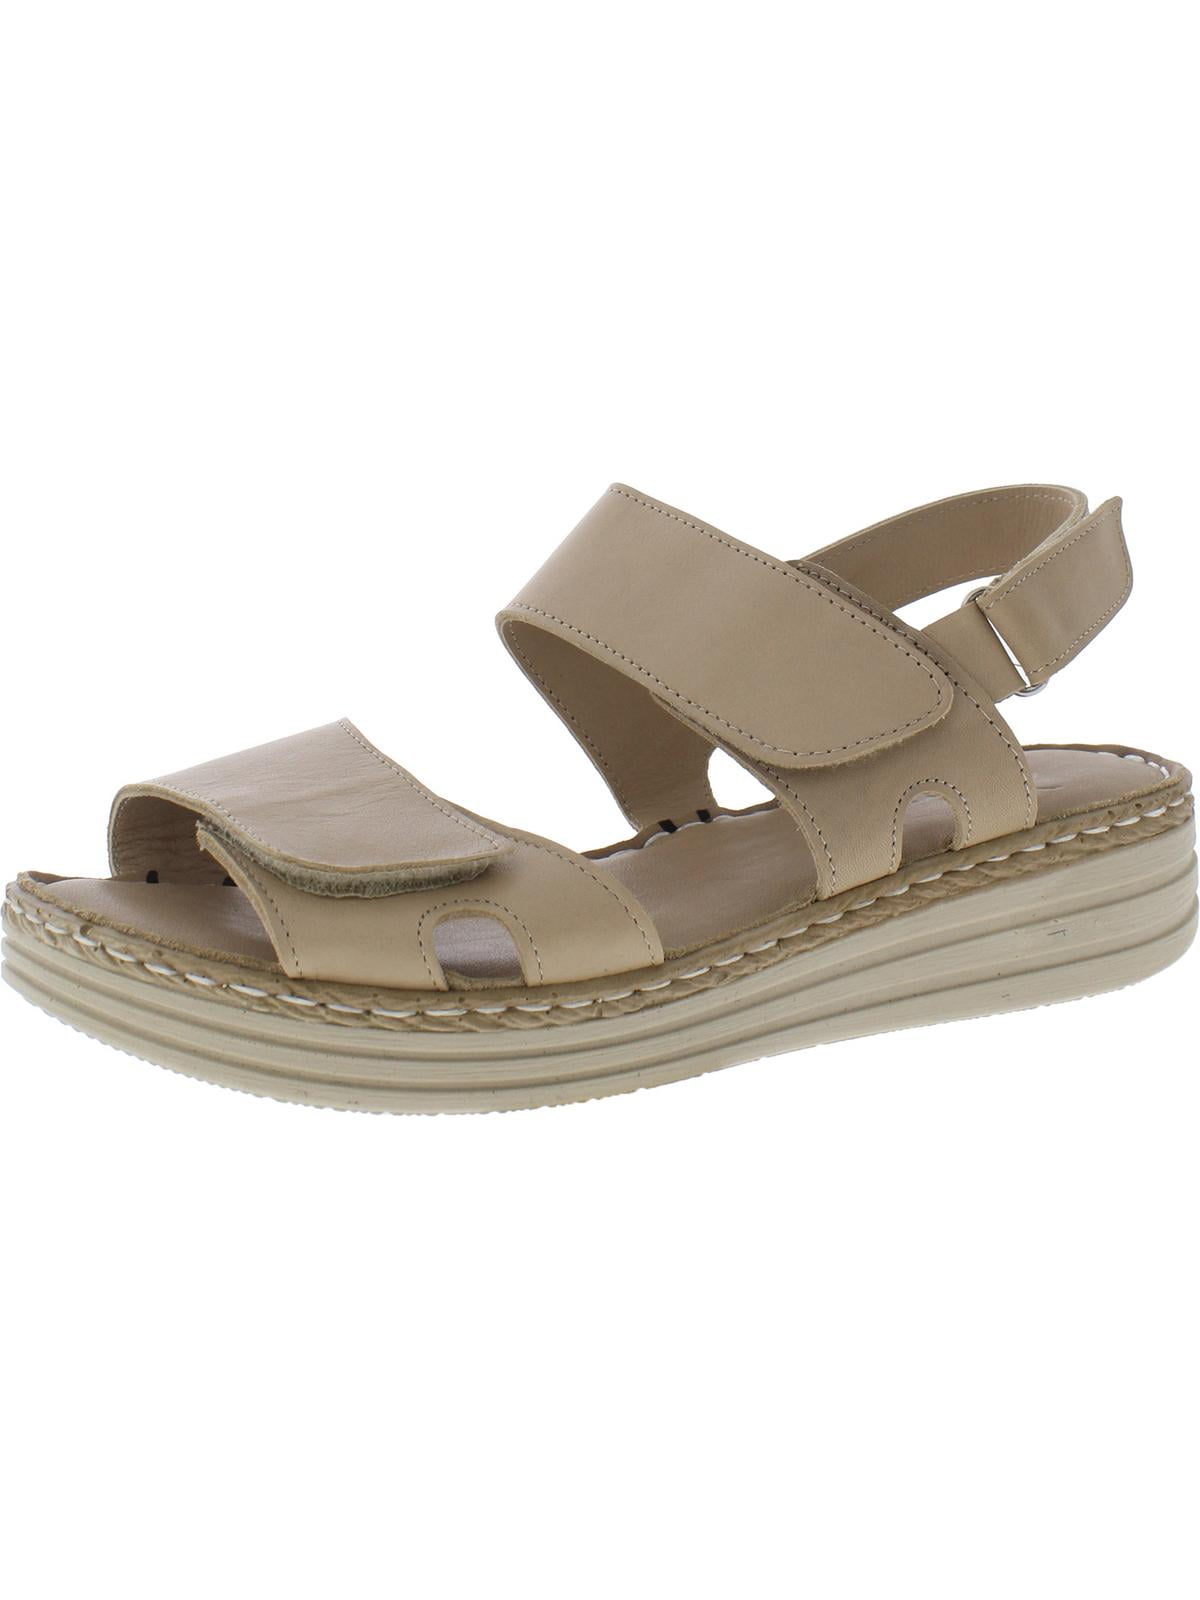 Lonza Womens Faux Leather Ankle Strap Platform Sandals - Walmart.com